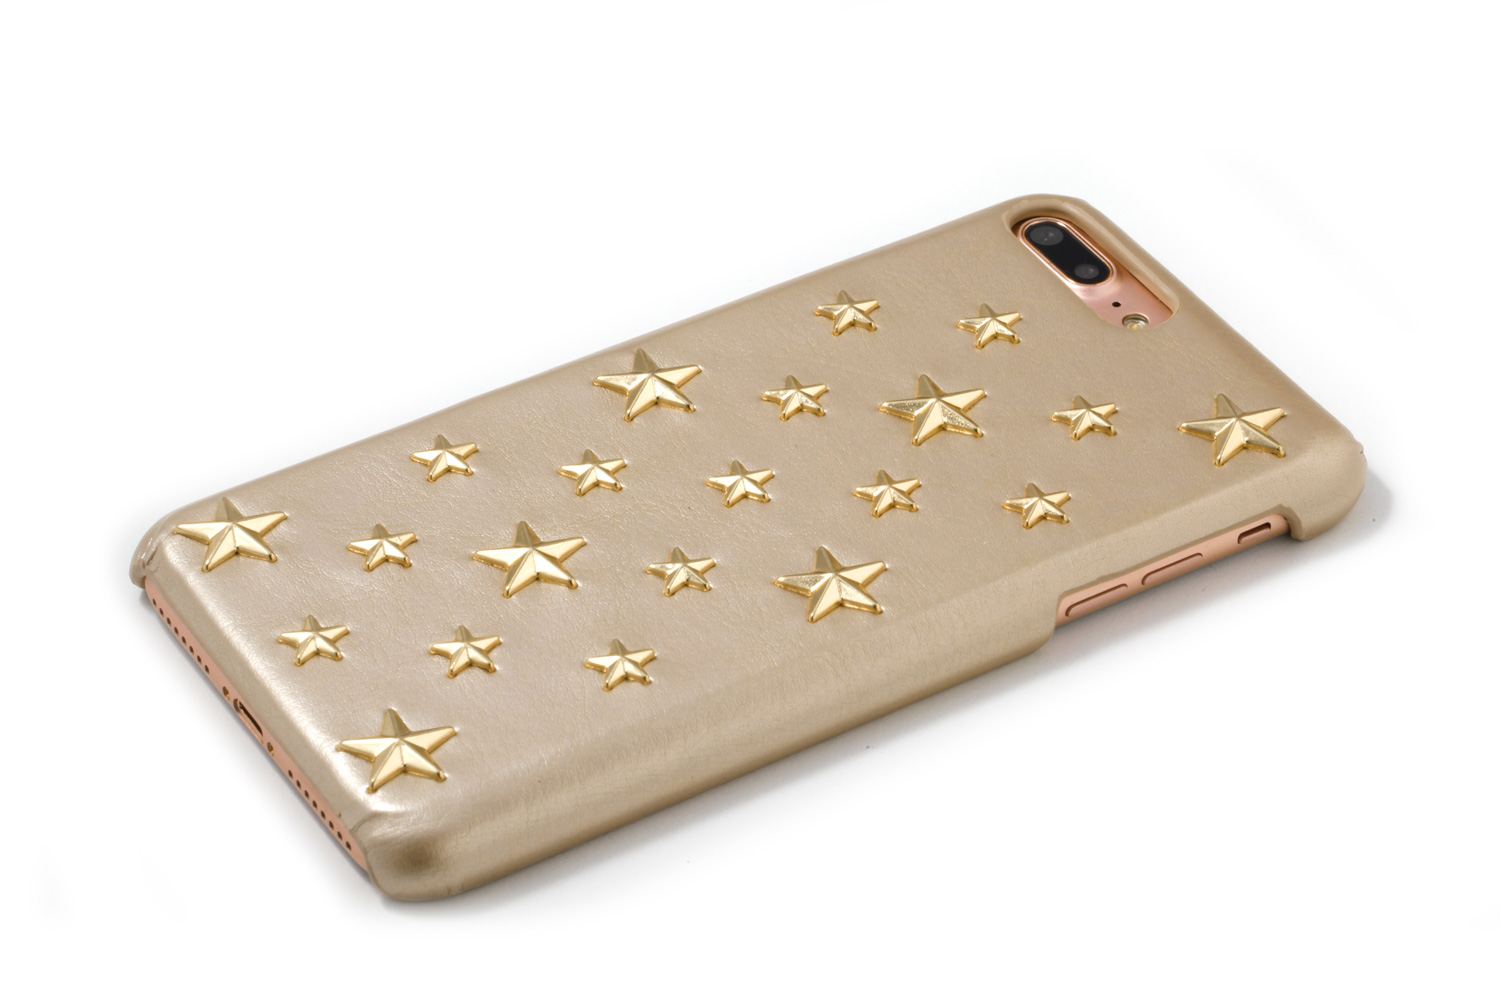 Stars Case 705P for iPhone7Plus